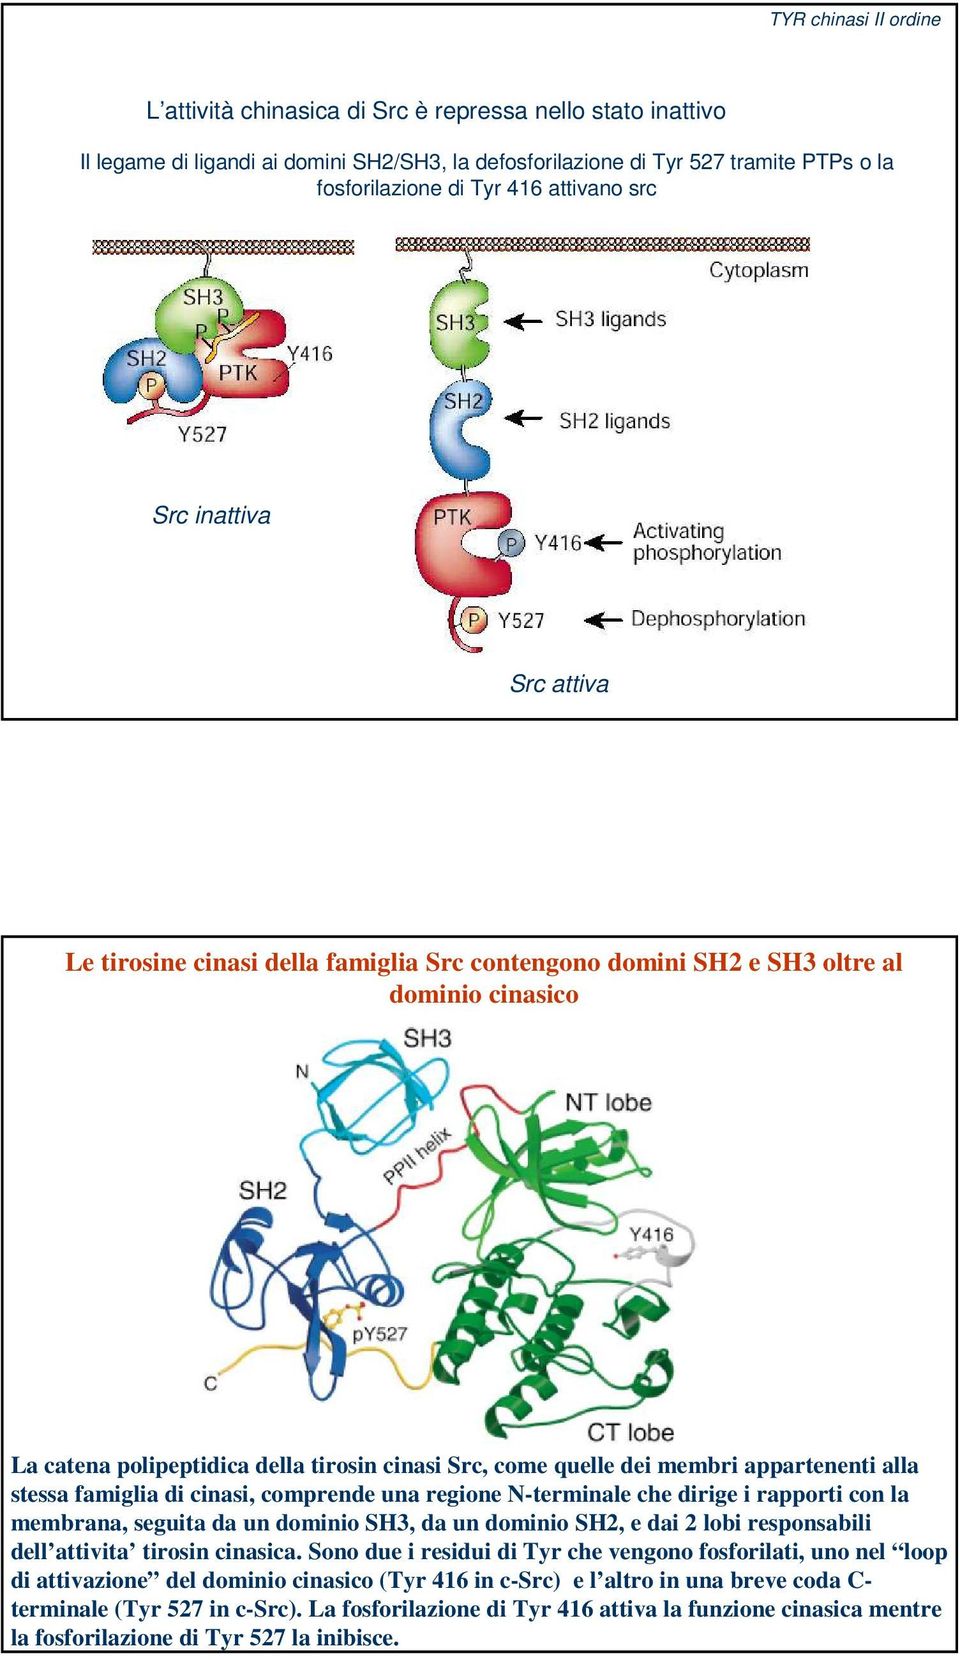 membri appartenenti alla stessa famiglia di cinasi, comprende una regione N-terminale che dirige i rapporti con la membrana, seguita da un dominio SH3, da un dominio SH2, e dai 2 lobi responsabili